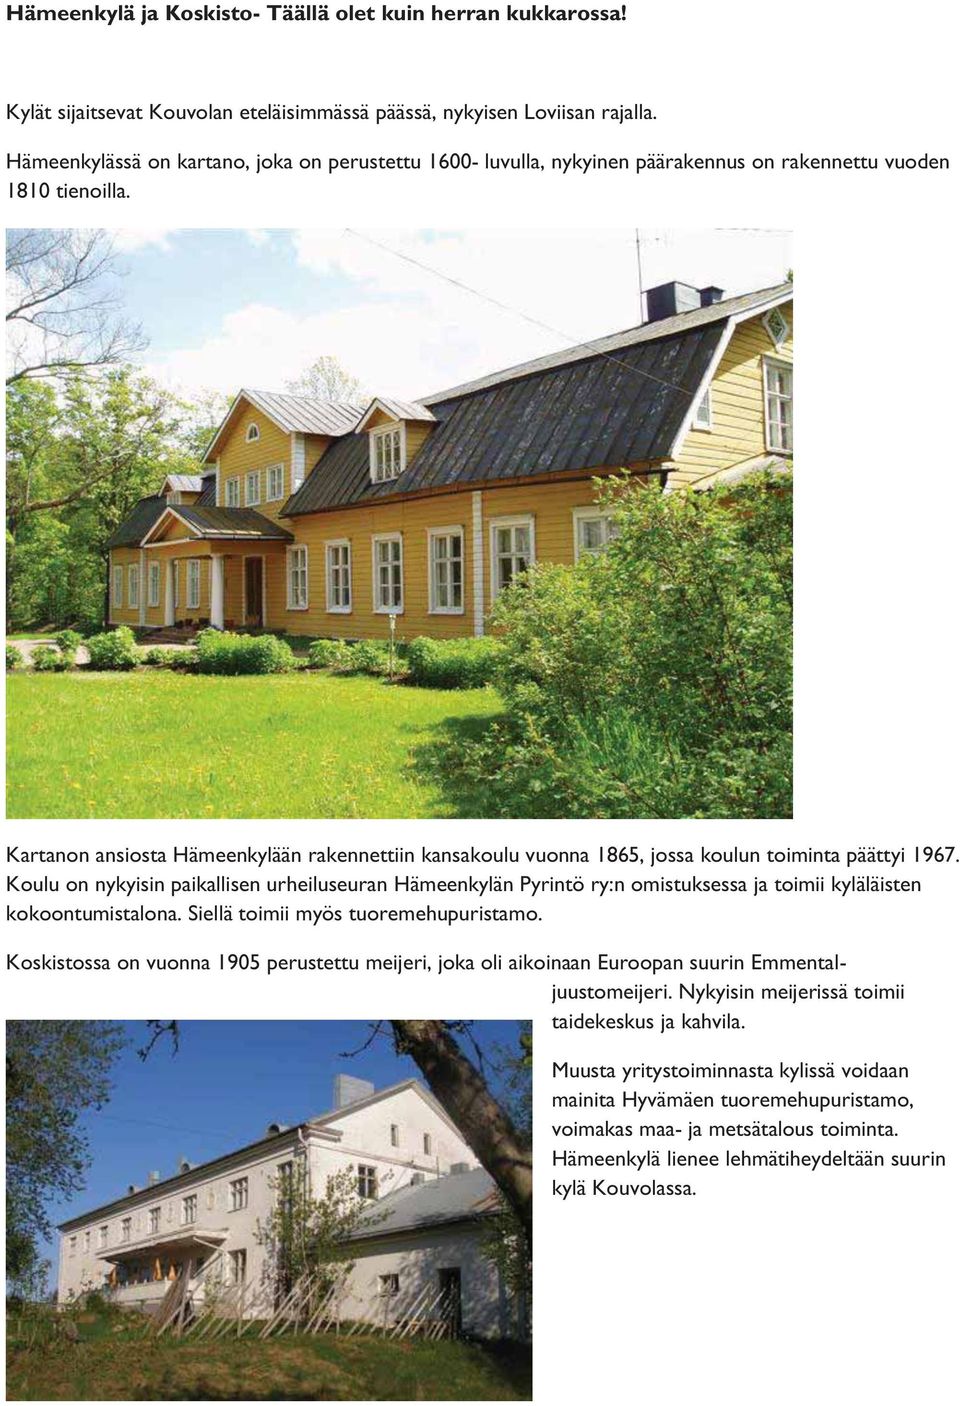 Kartanon ansiosta Hämeenkylään rakennettiin kansakoulu vuonna 1865, jossa koulun toiminta päättyi 1967.